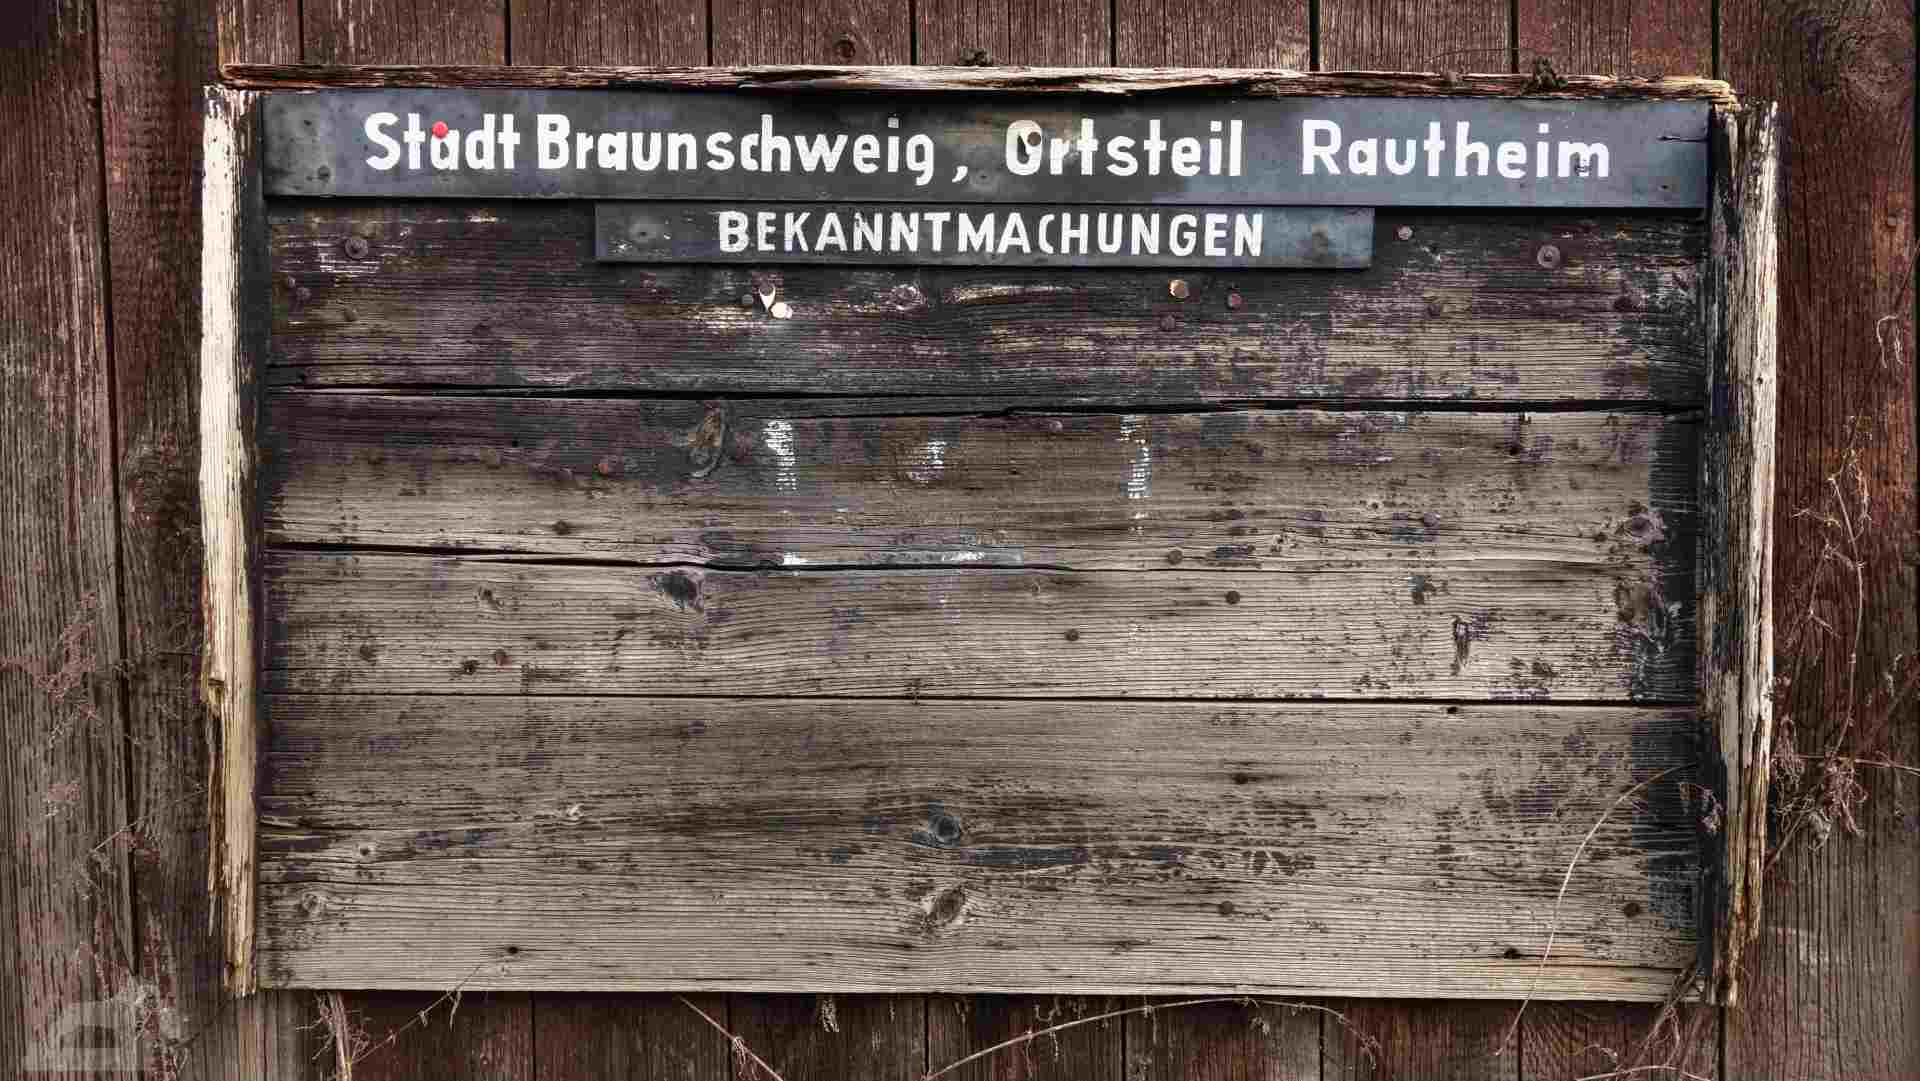 Bekanntmachungstafel der Stadt Braunschweig in Rautheim